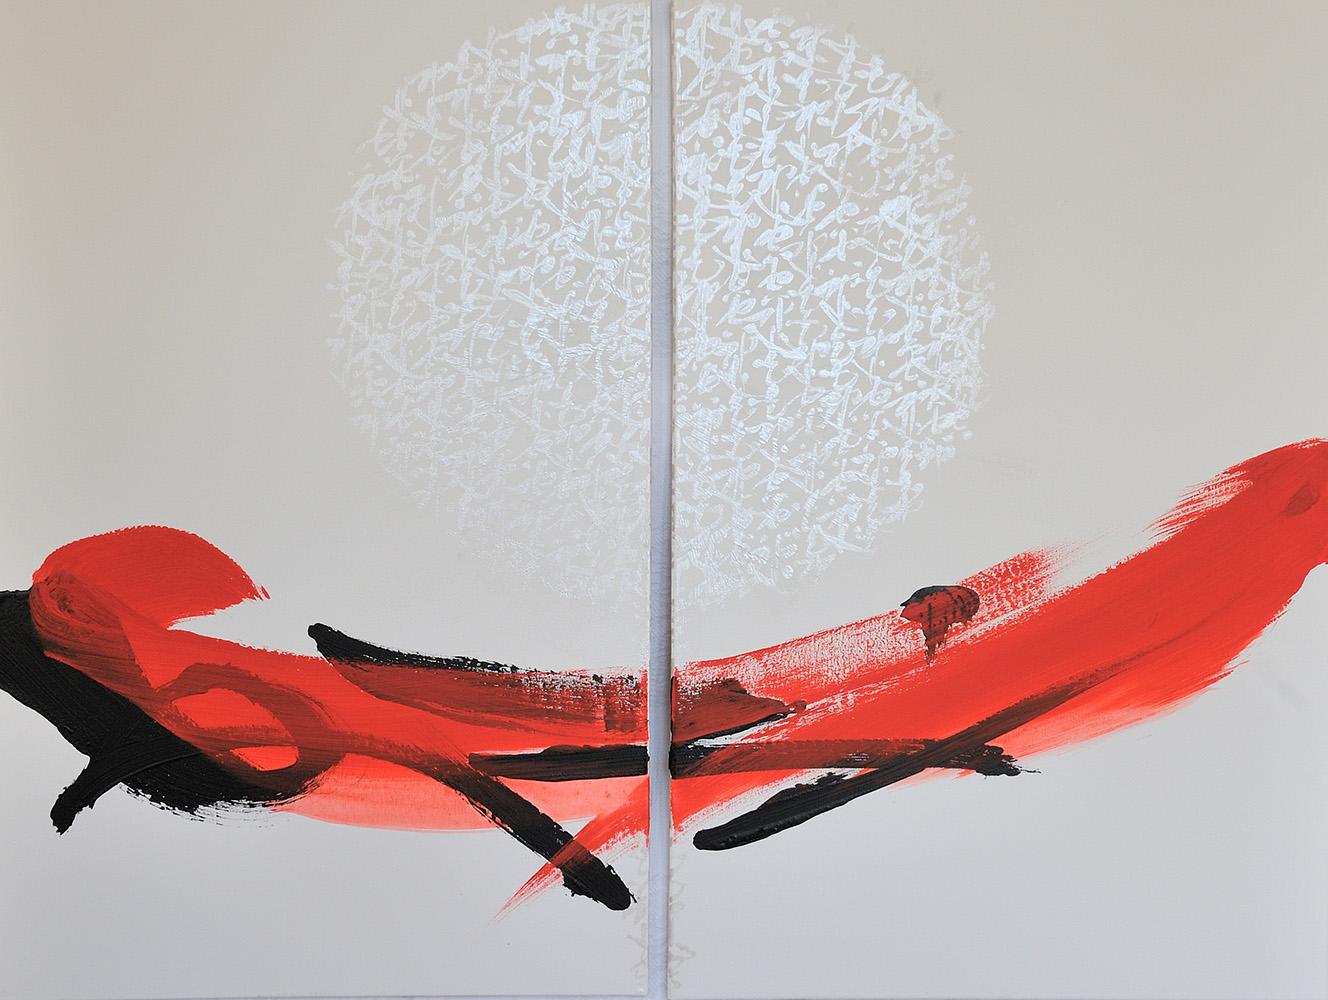 TN666-D ist ein einzigartiges Diptychon-Gemälde des japanischen zeitgenössischen Künstlers Hachiro Kanno. Das Gemälde ist mit Tusche und Acryl auf Leinwand gemalt und hat die Maße 100 × 130 cm (39,4 × 51,2 in). Dieses Diptychon besteht aus zwei